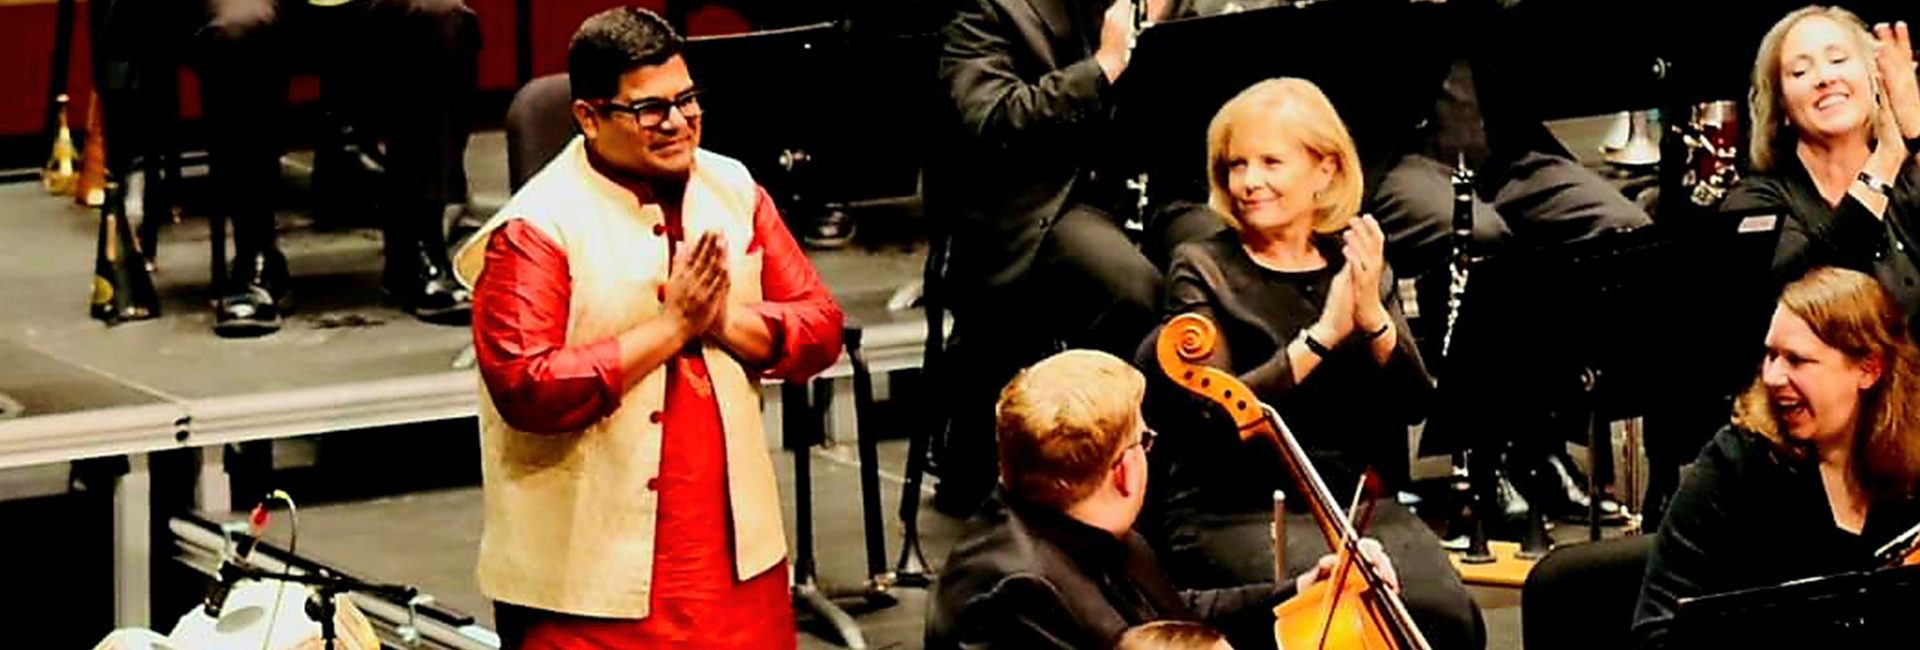 Sutanu Sur: نقل قوة الهند الناعمة إلى العالم من خلال الموسيقى